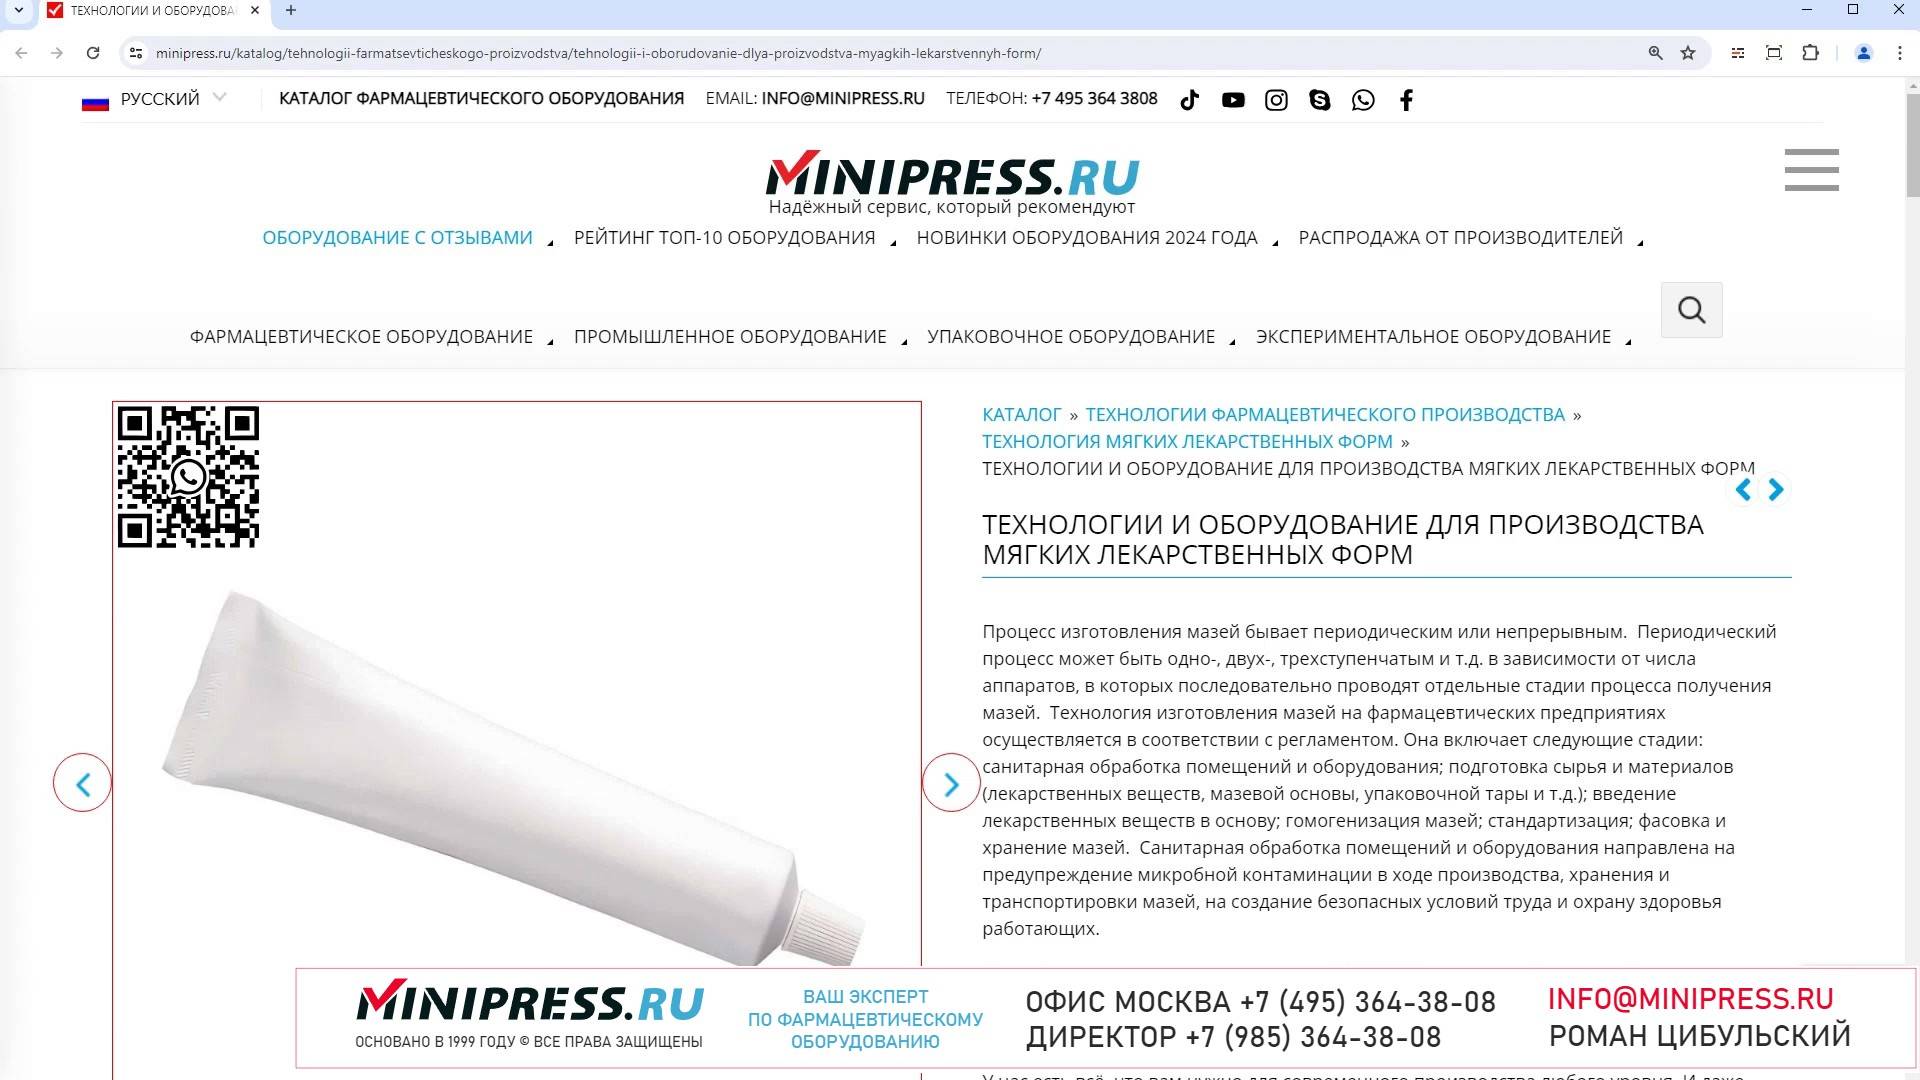 Minipress.ru Технологии и оборудование для производства мягких лекарственных форм